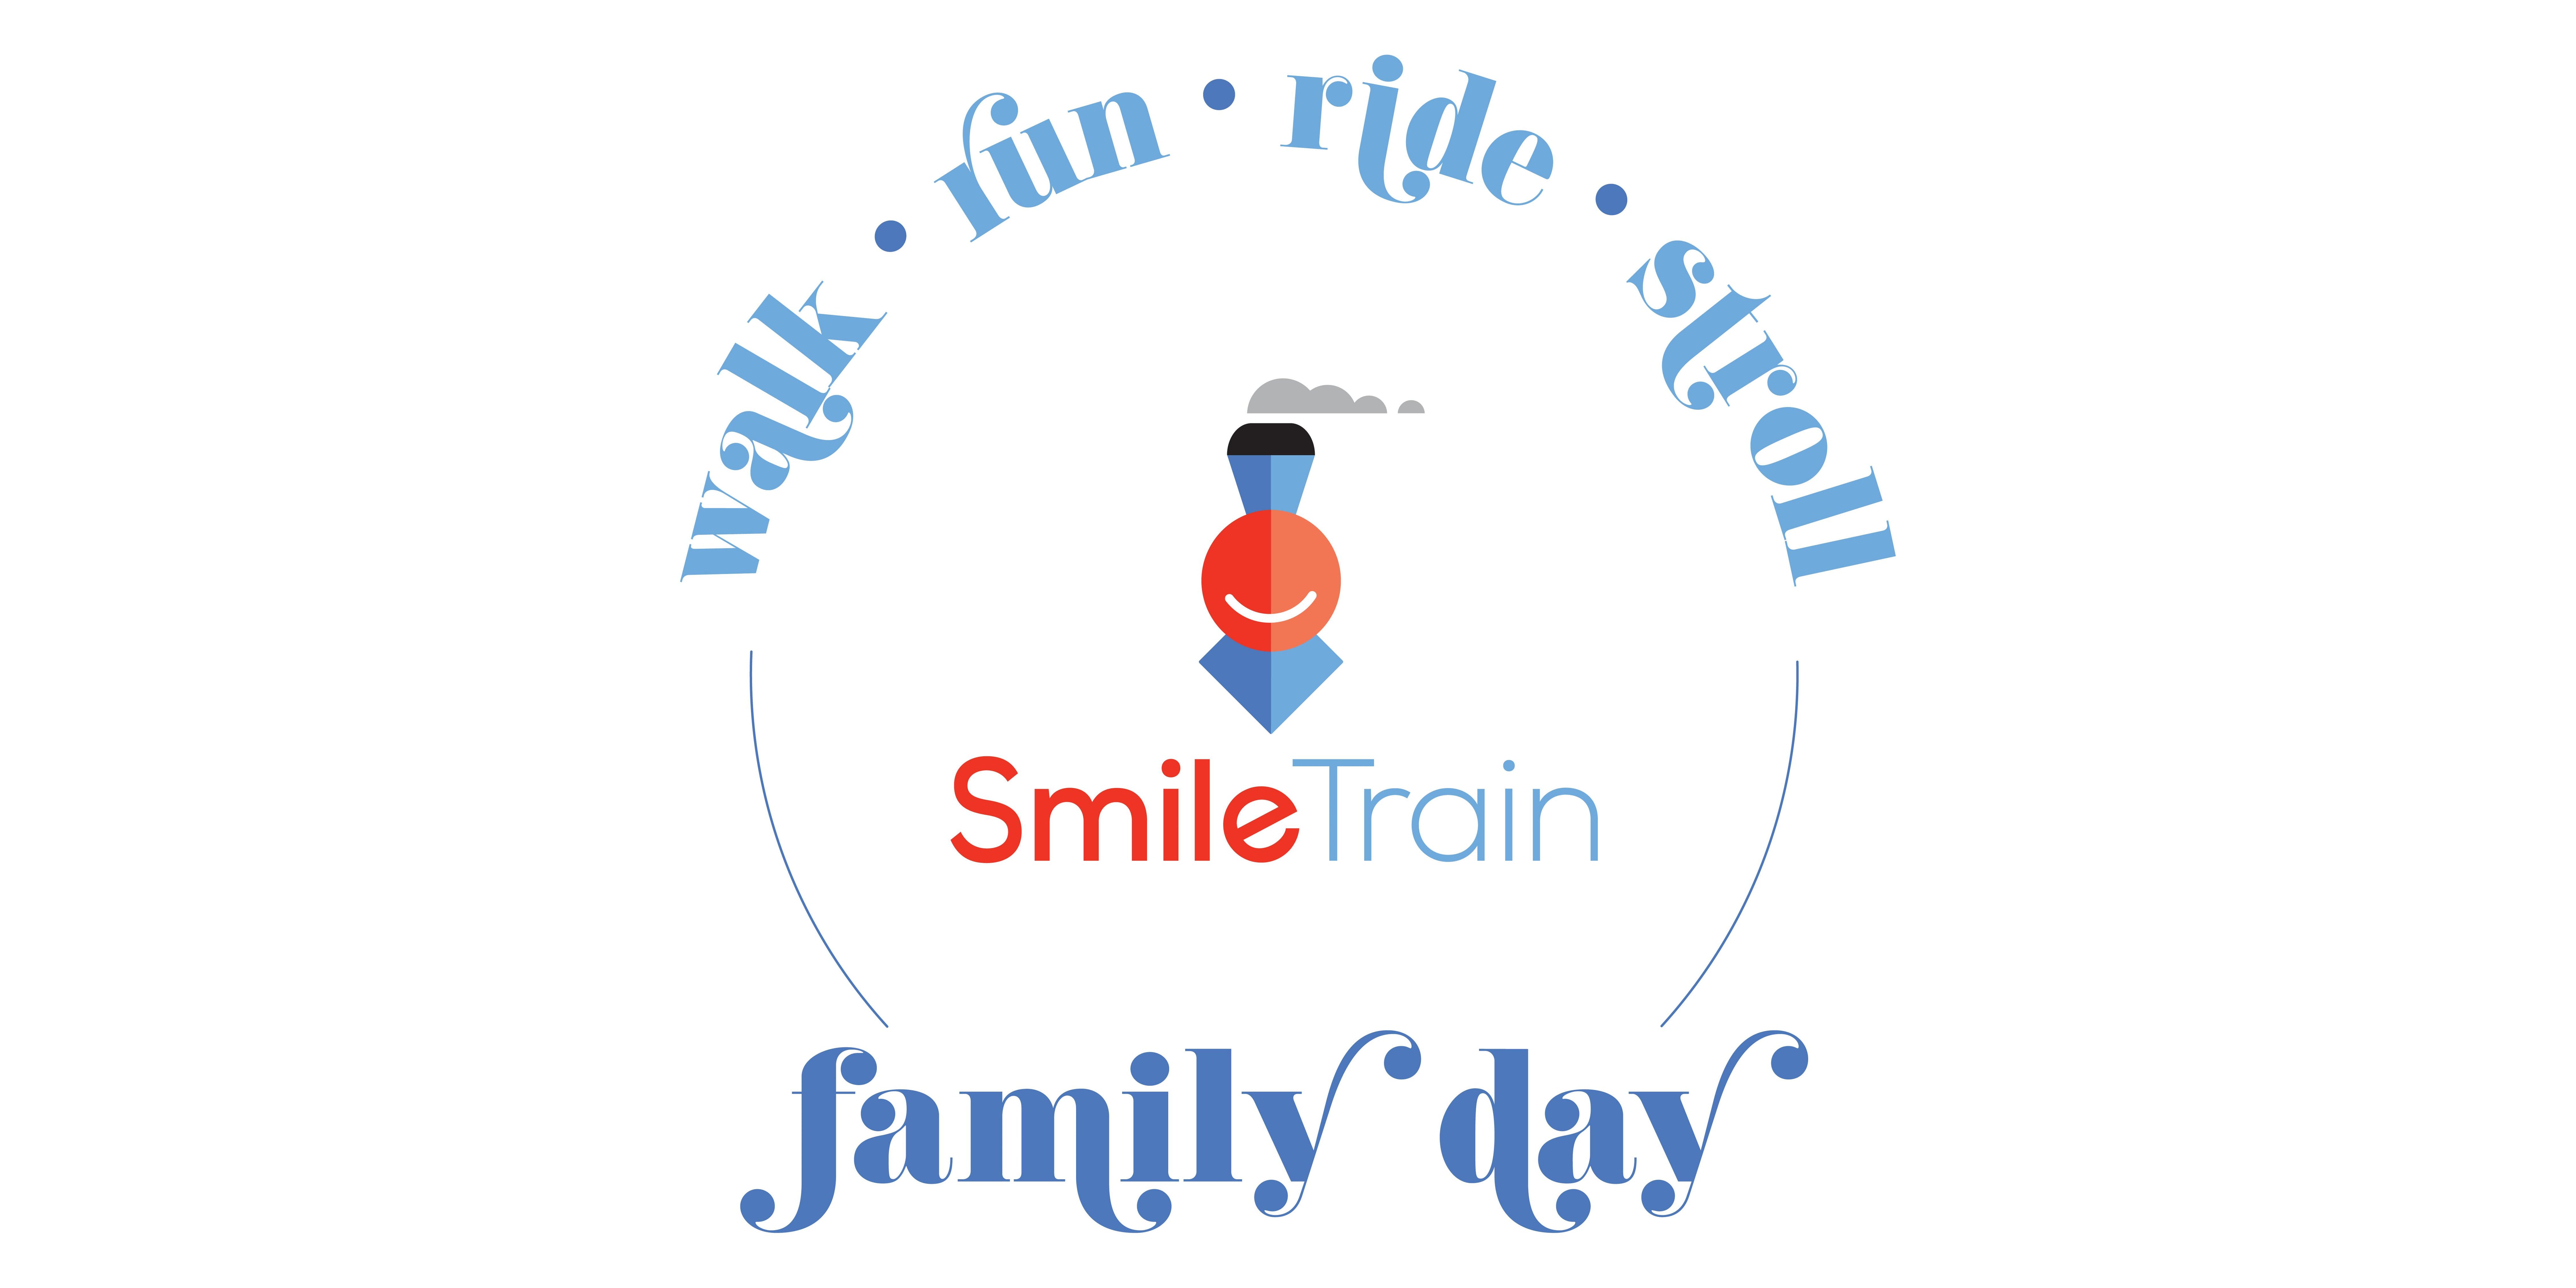 Smile Train Logo - Smile Train Family Day - 2 JUN 2018